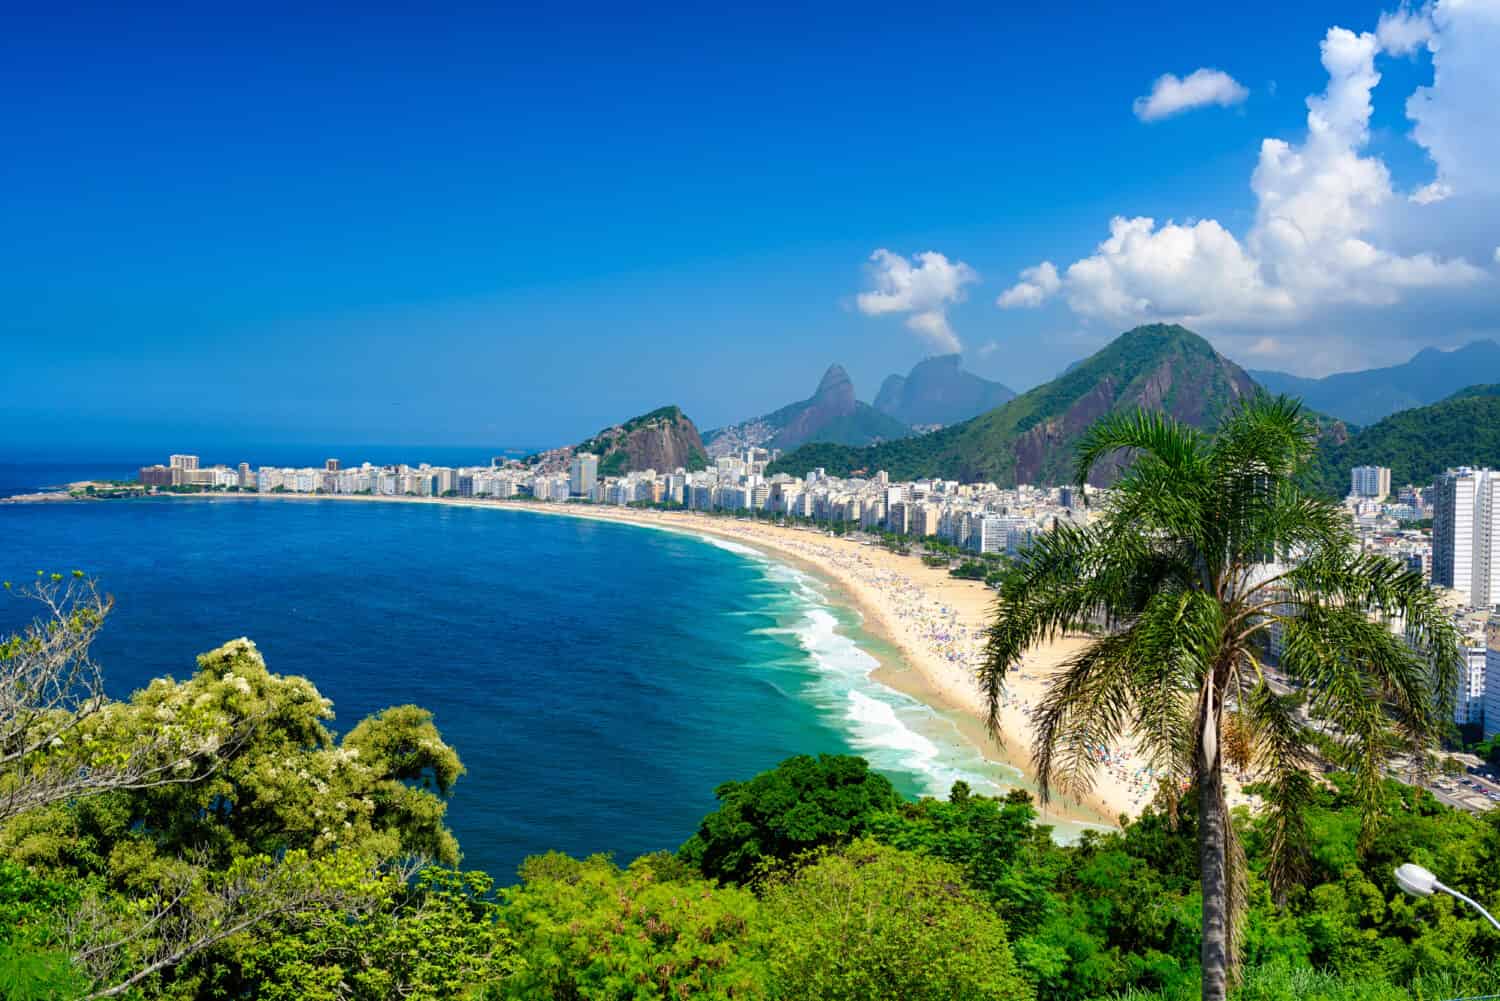 Copacabana beach in Rio de Janeiro, Brazil. Copacabana beach is the most famous beach of Rio de Janeiro, Brazil. Skyline of Rio de Janeiro